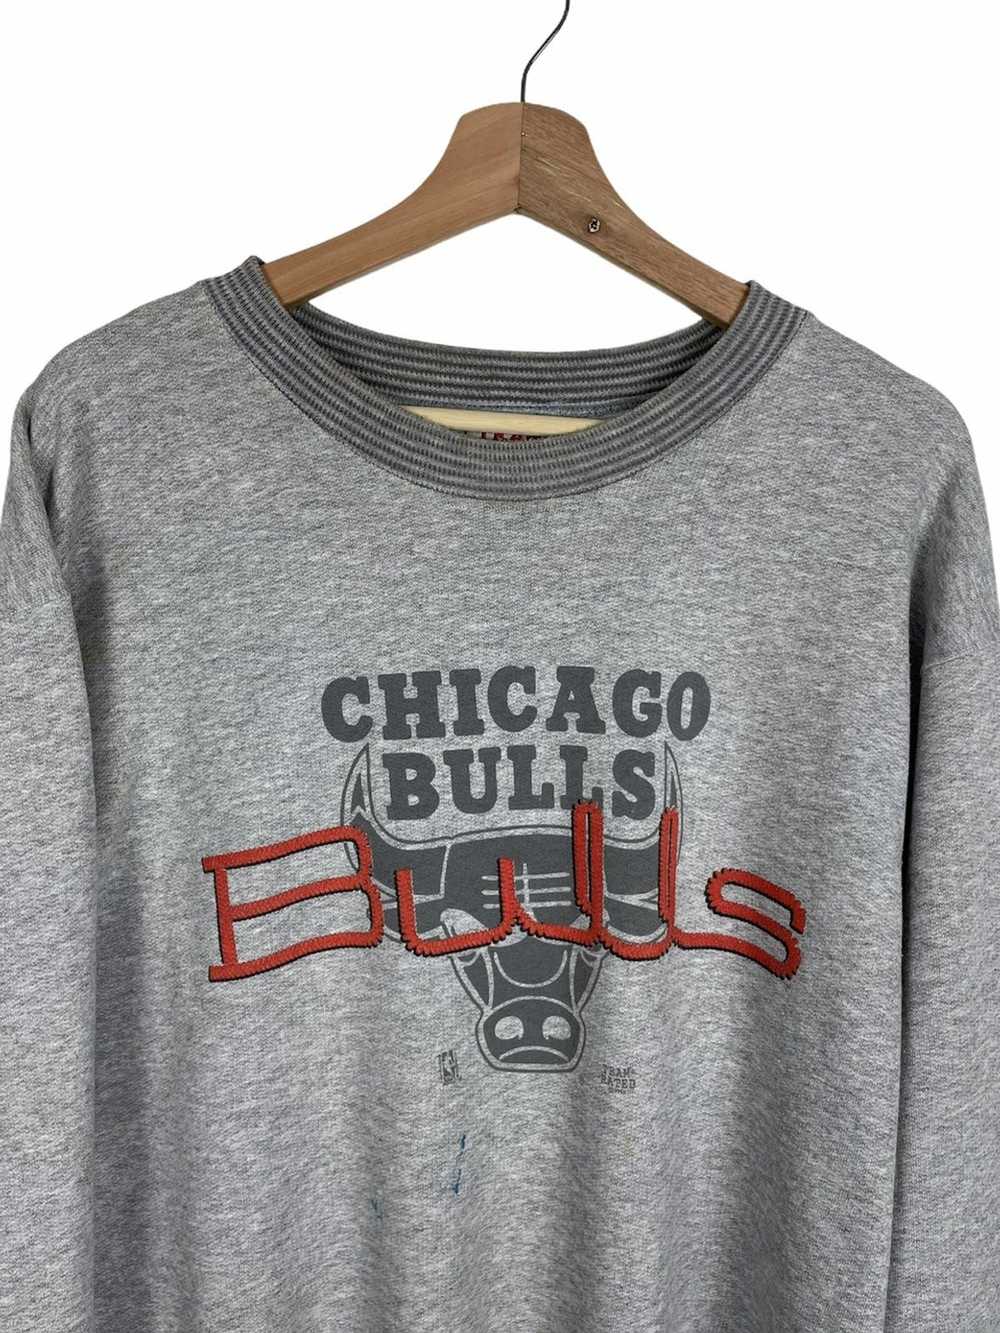 Chicago Bulls × Made In Usa × Vintage VINTAGE 199… - image 3